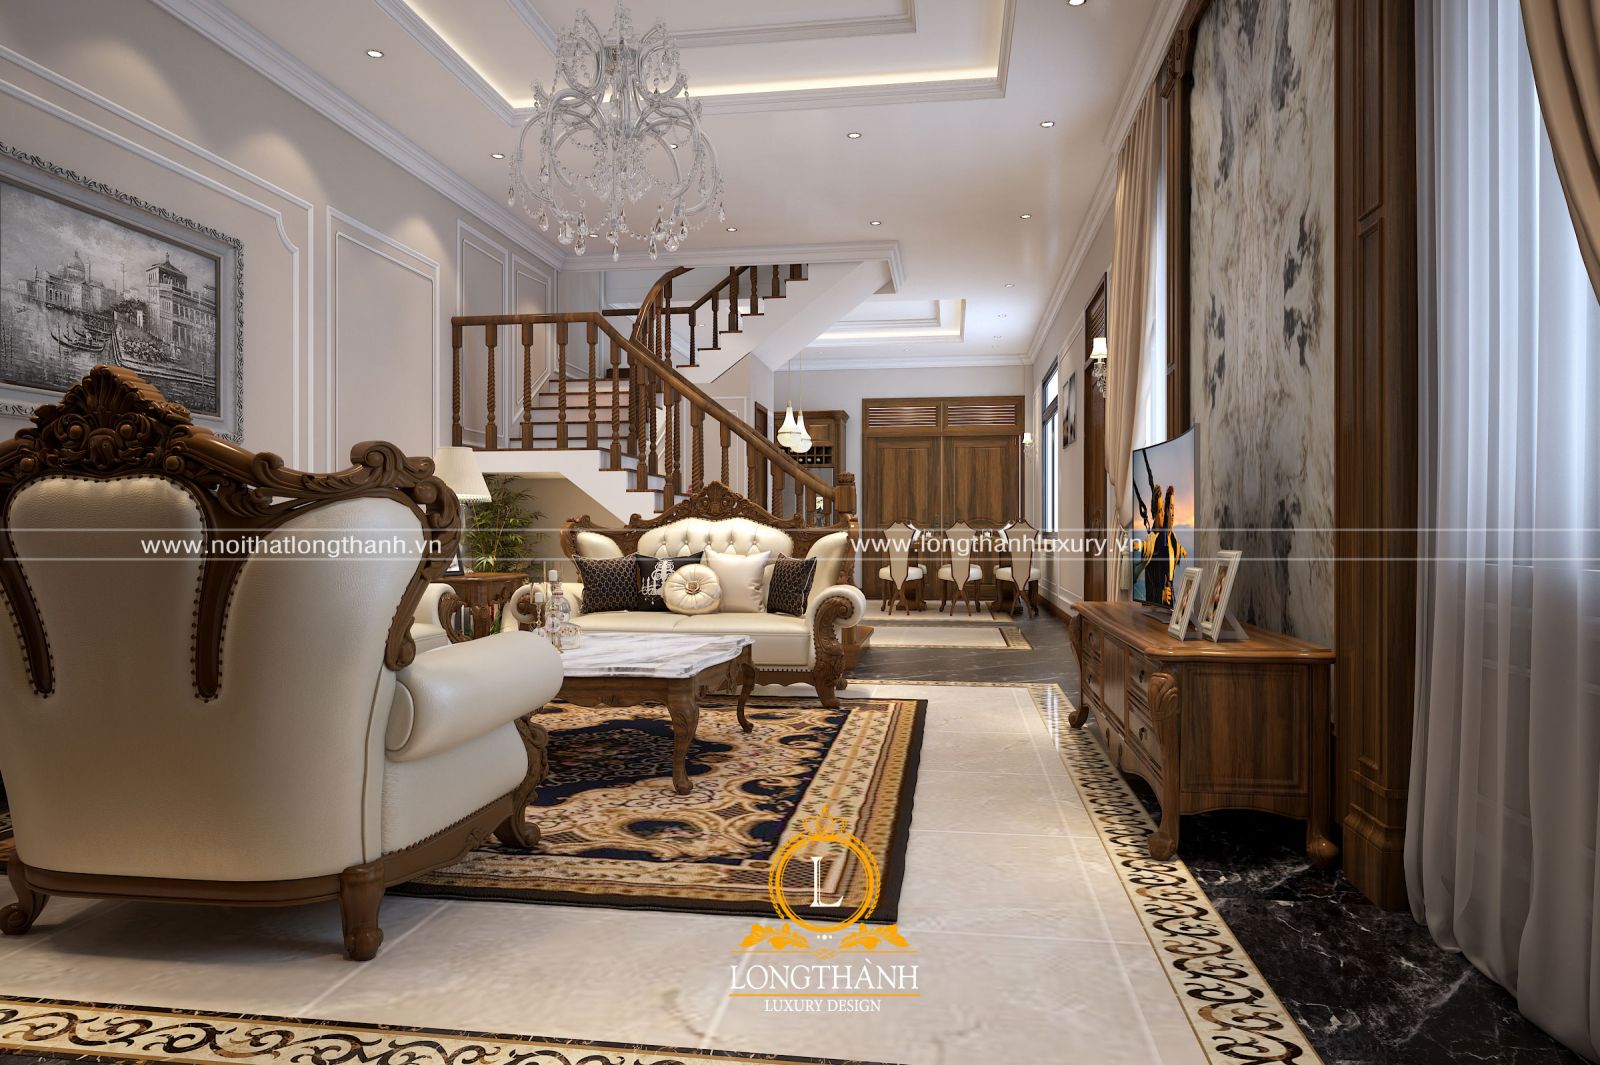 Đồ nội thất gỗ tự nhiên có nhiều ưu điểm nổi bật tạo nên nét đẹp và giá trị cho ngôi nhà